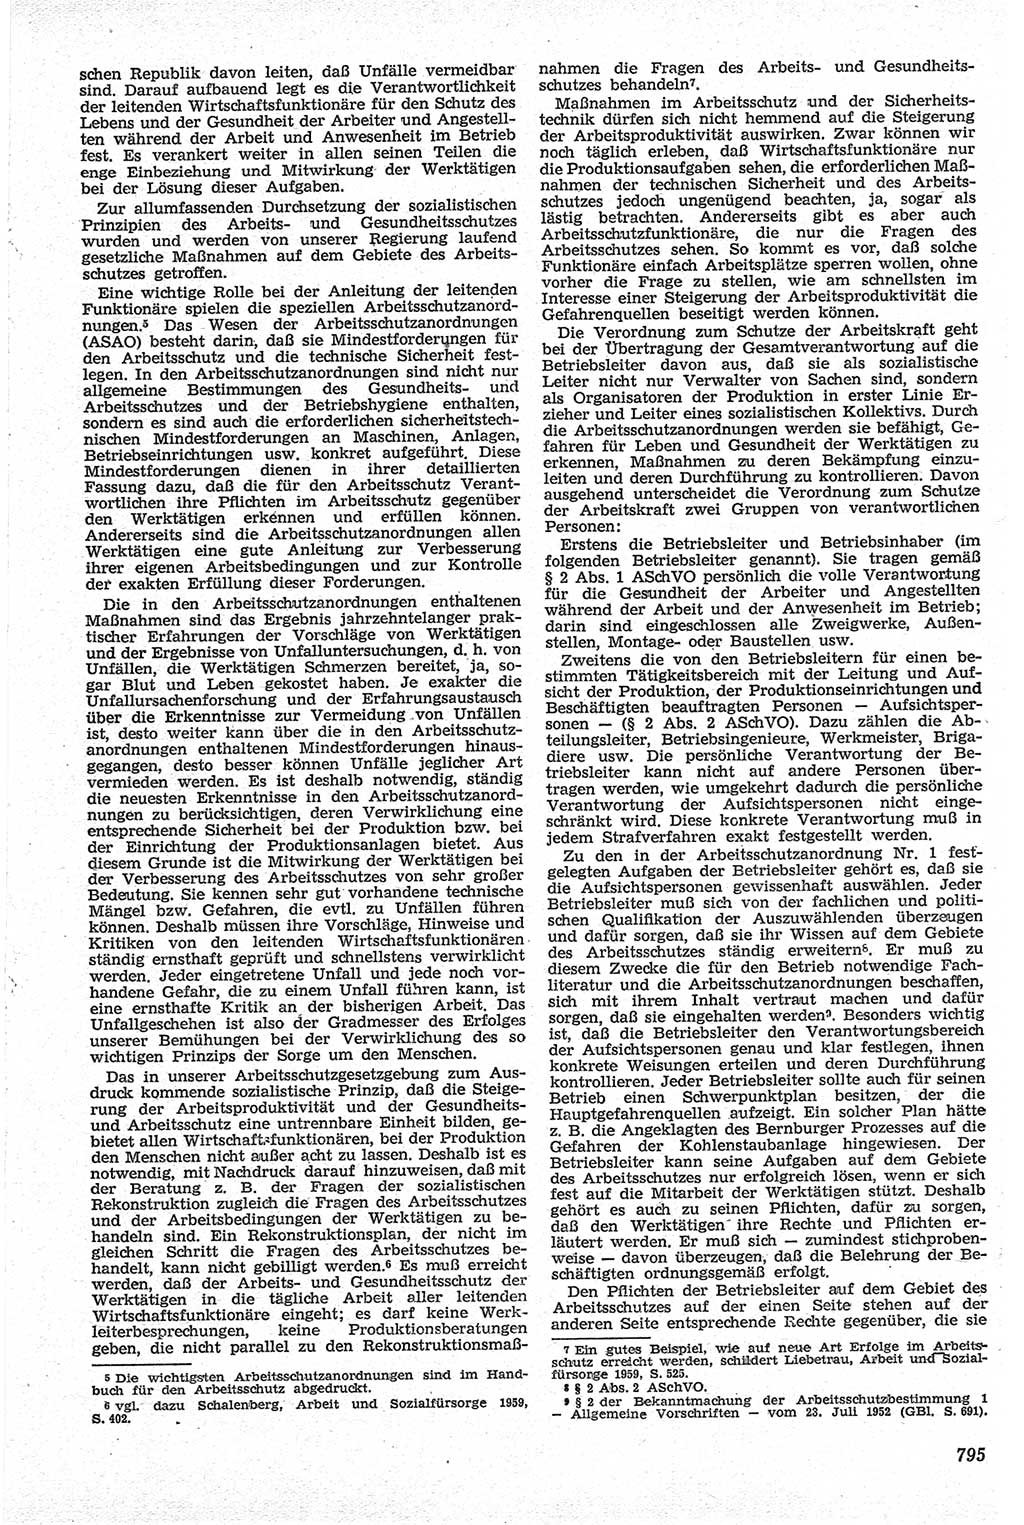 Neue Justiz (NJ), Zeitschrift für Recht und Rechtswissenschaft [Deutsche Demokratische Republik (DDR)], 13. Jahrgang 1959, Seite 795 (NJ DDR 1959, S. 795)